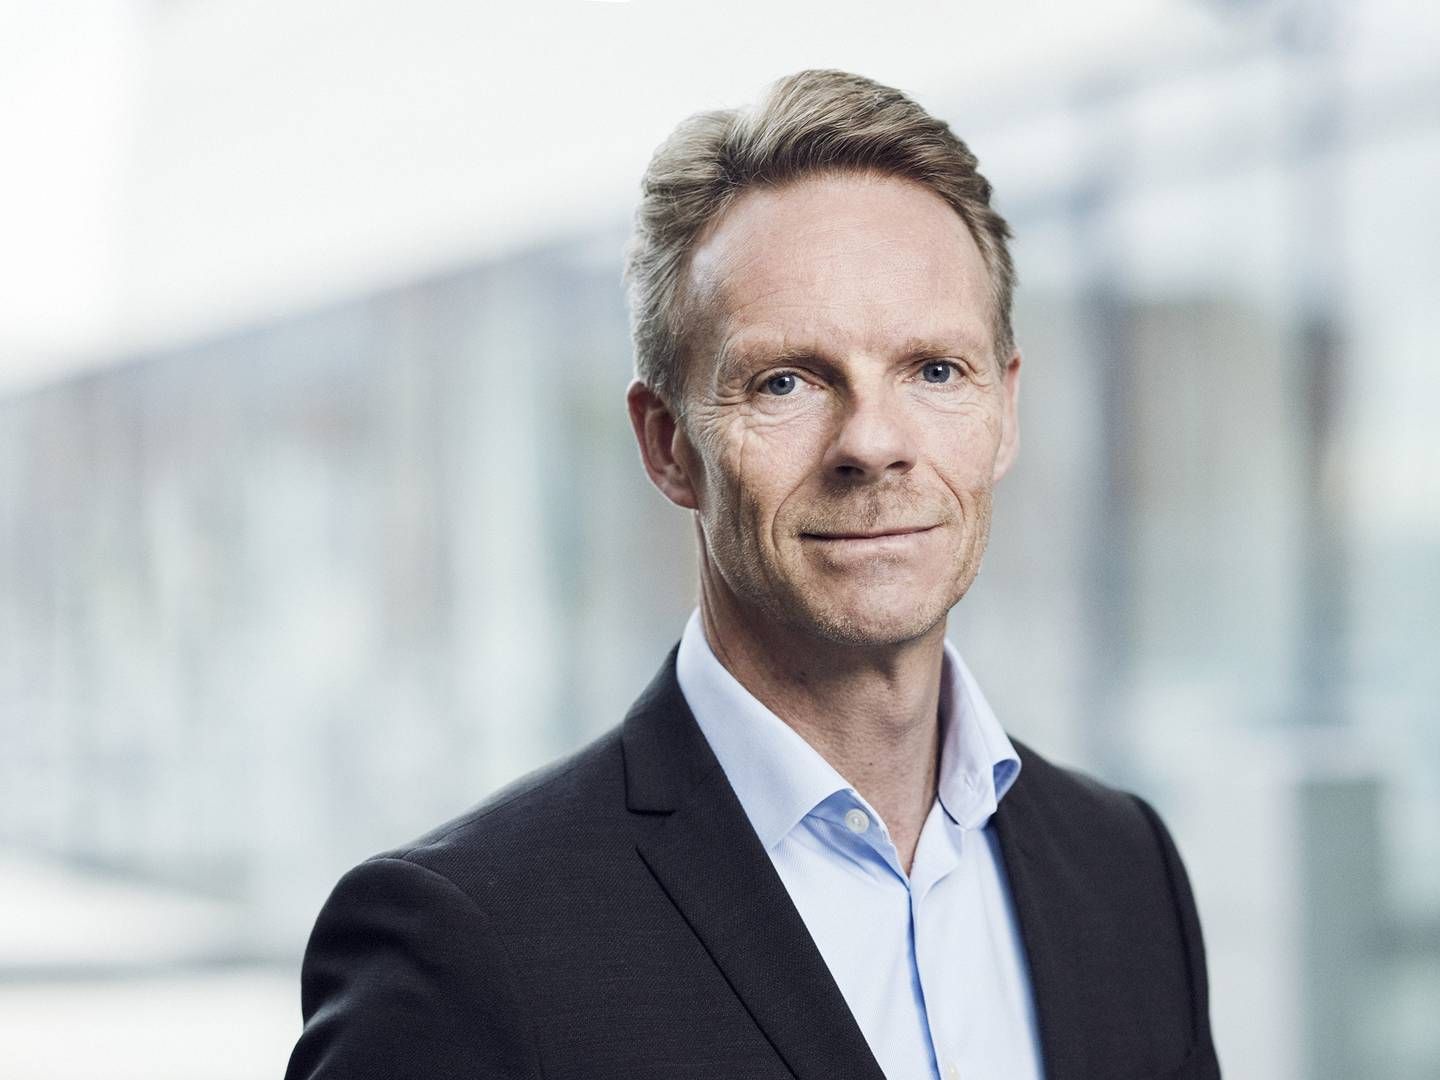 Bankinvest med partnerdirektør Thomas Bonnor i spidsen kan glæde sig over igen at blive bedømt højt af danske investeringsforeninger. | Foto: BankInvest / PR